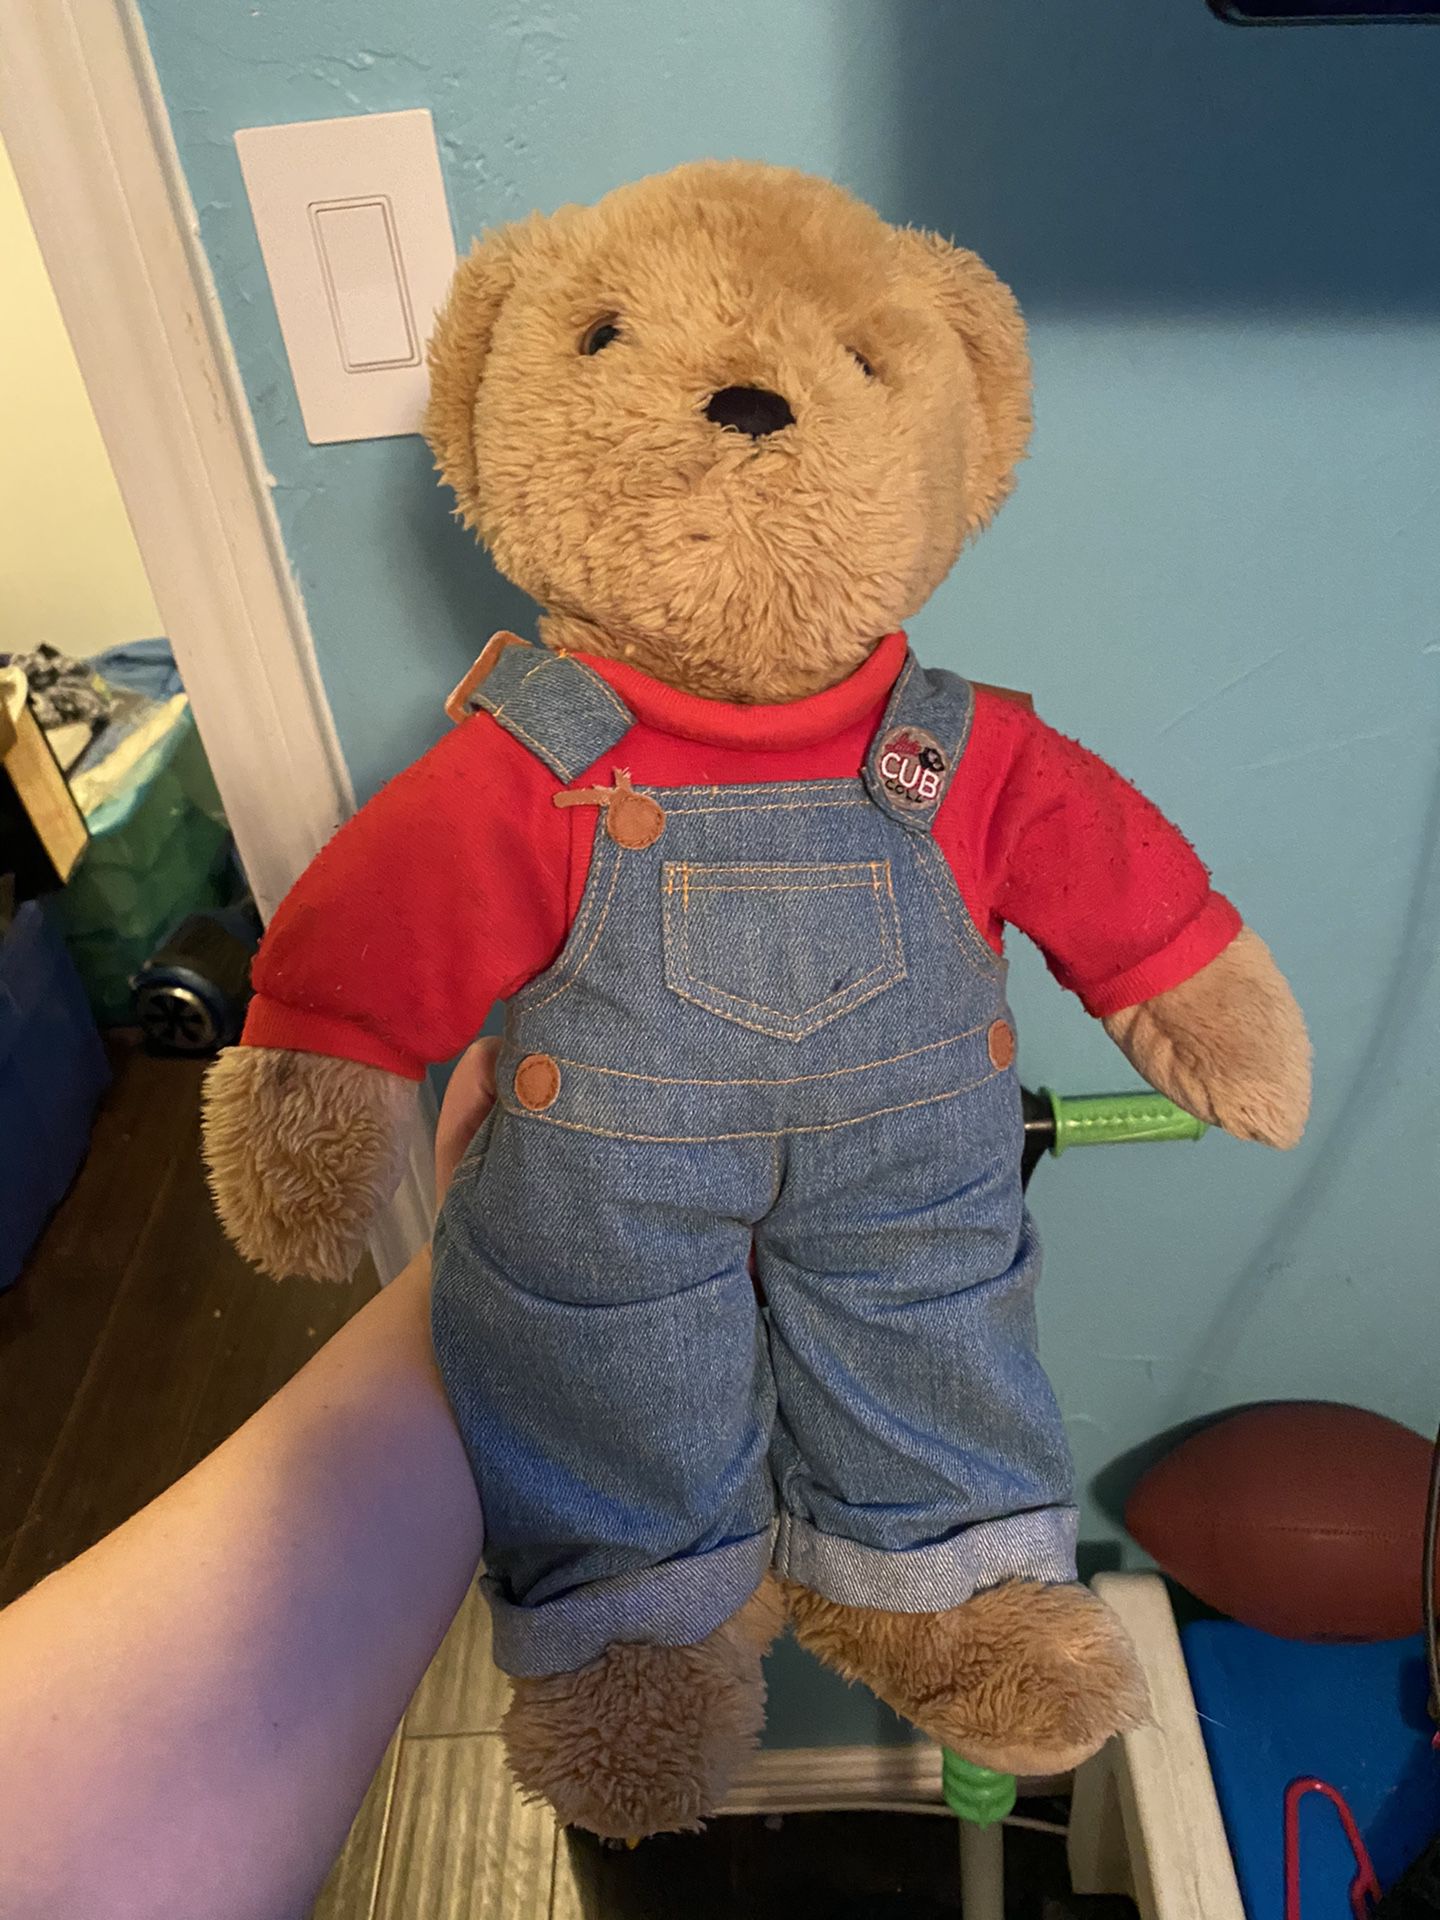 Baby Teddy bear for nursery